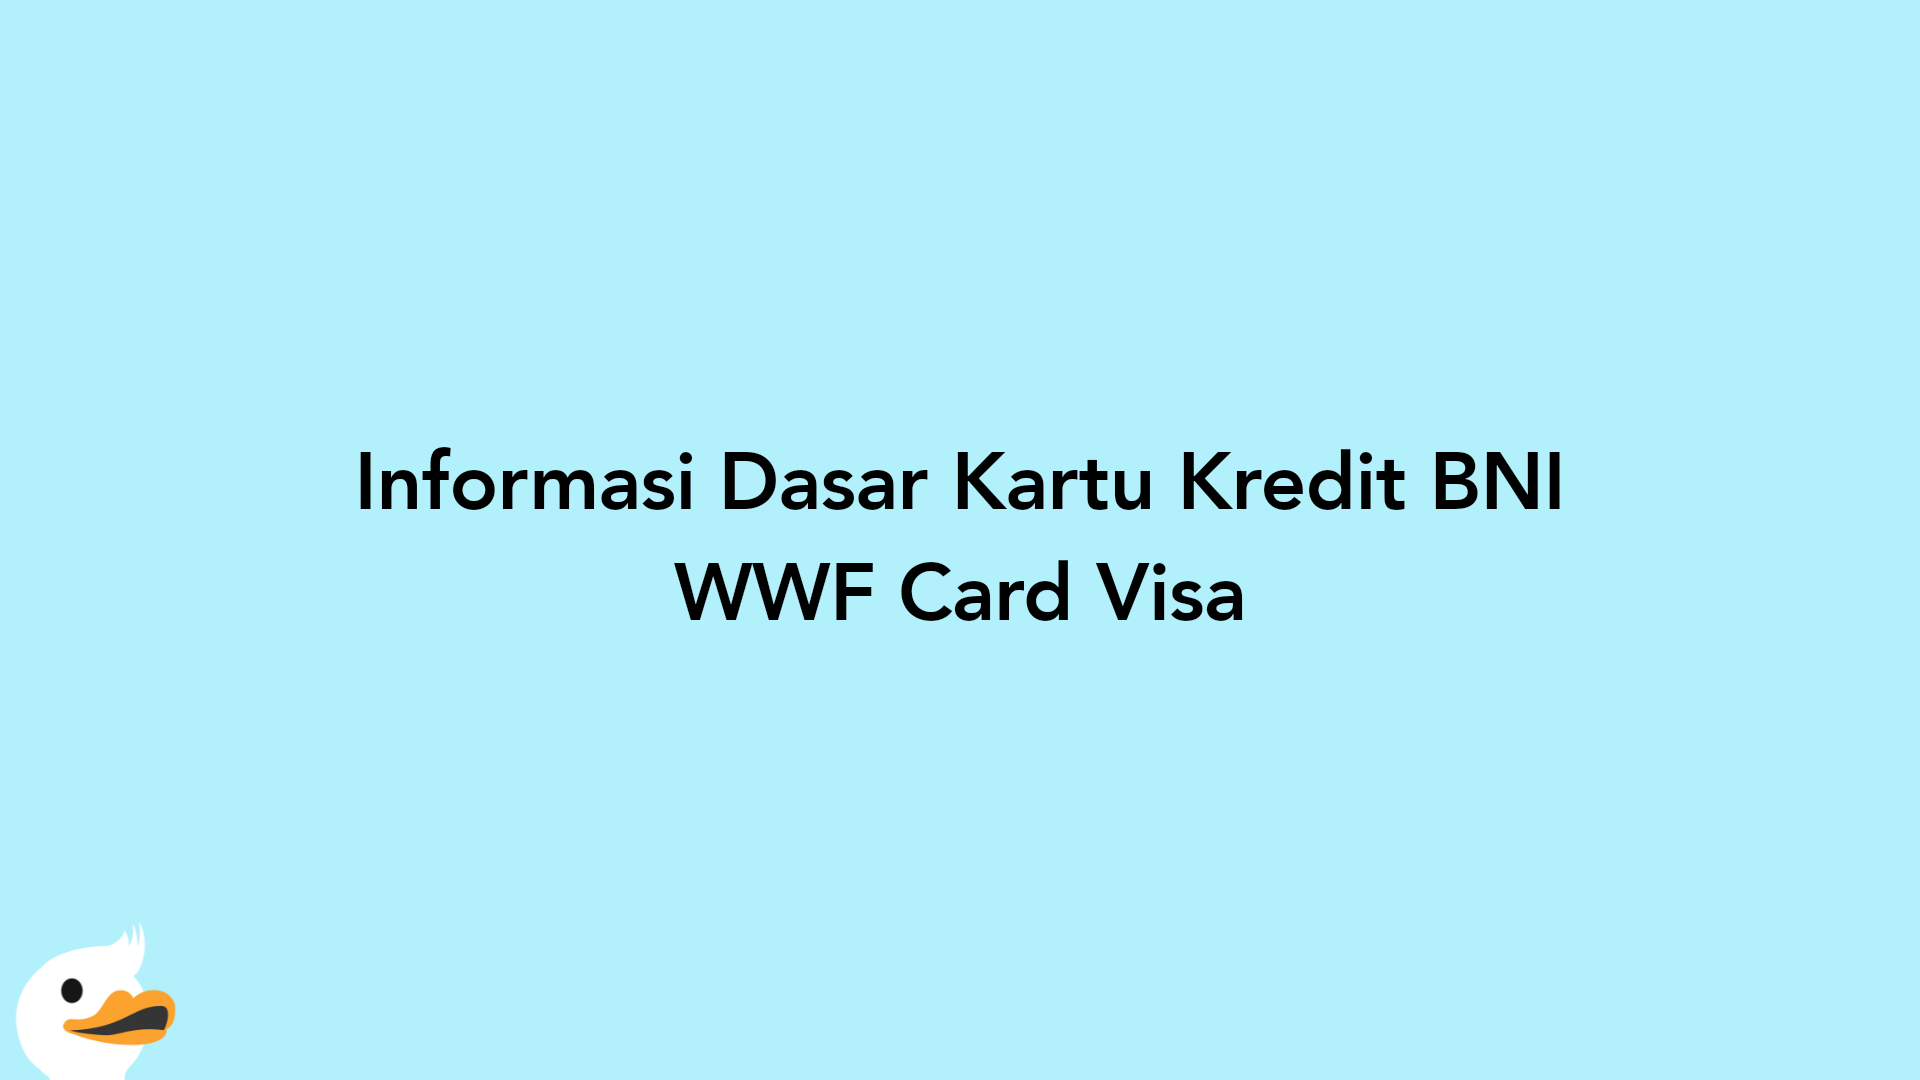 Informasi Dasar Kartu Kredit BNI WWF Card Visa